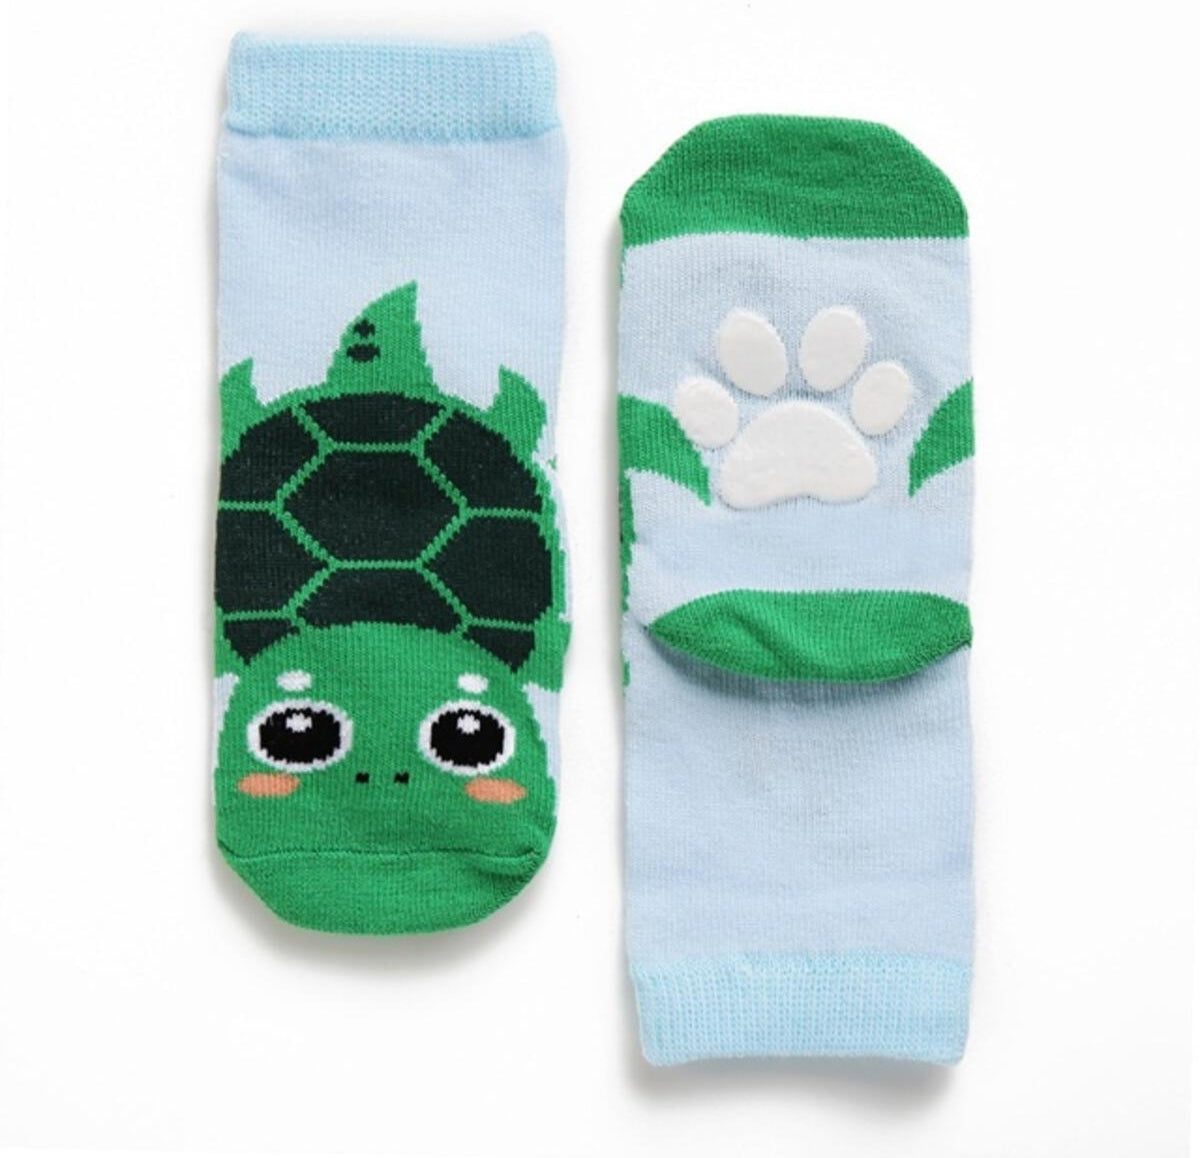 Zoo Socks - Size 3T - 5T - Assortment